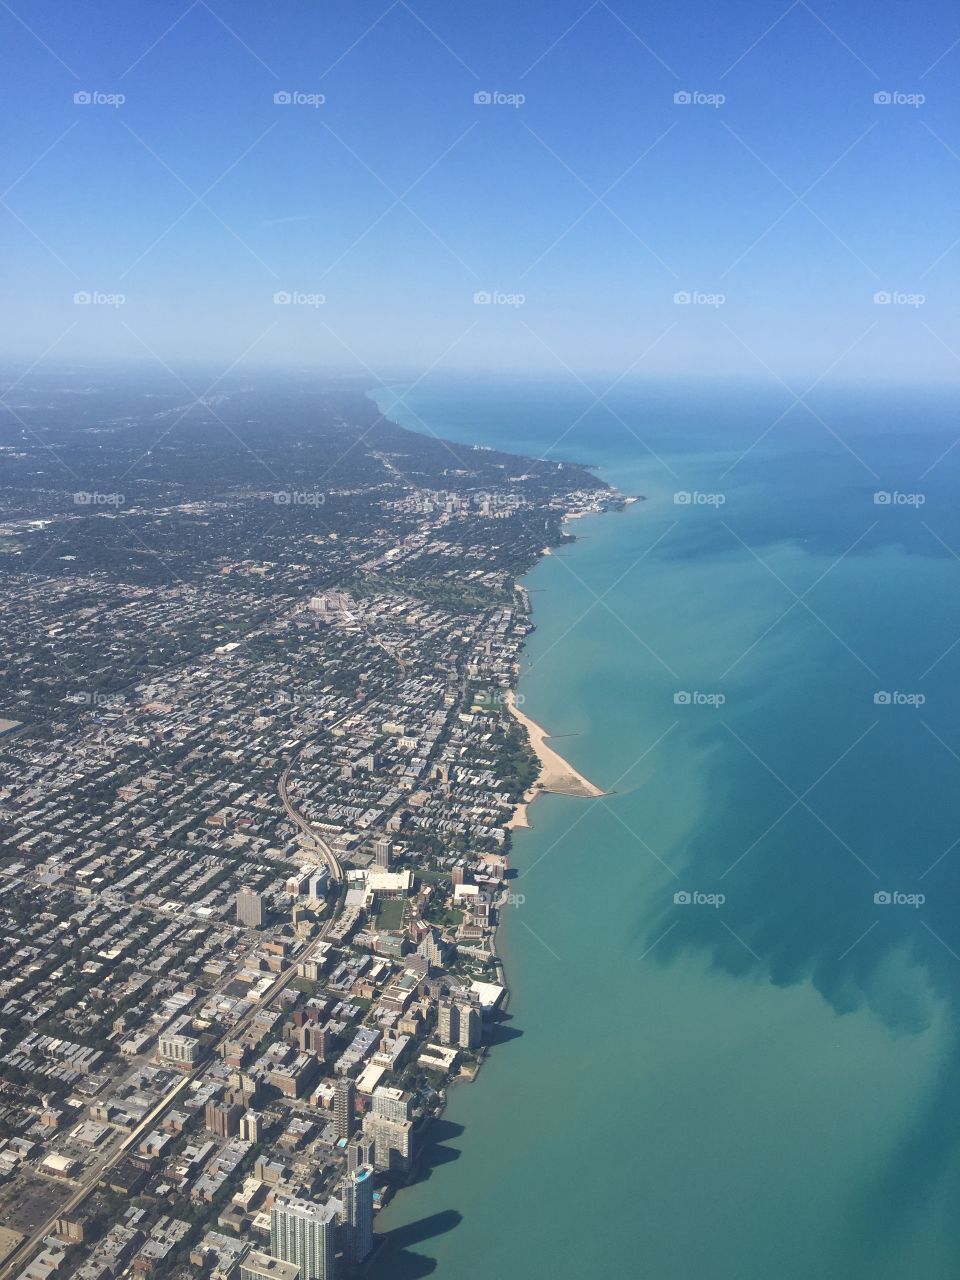 Chicago. Chicago and Lake Michigan